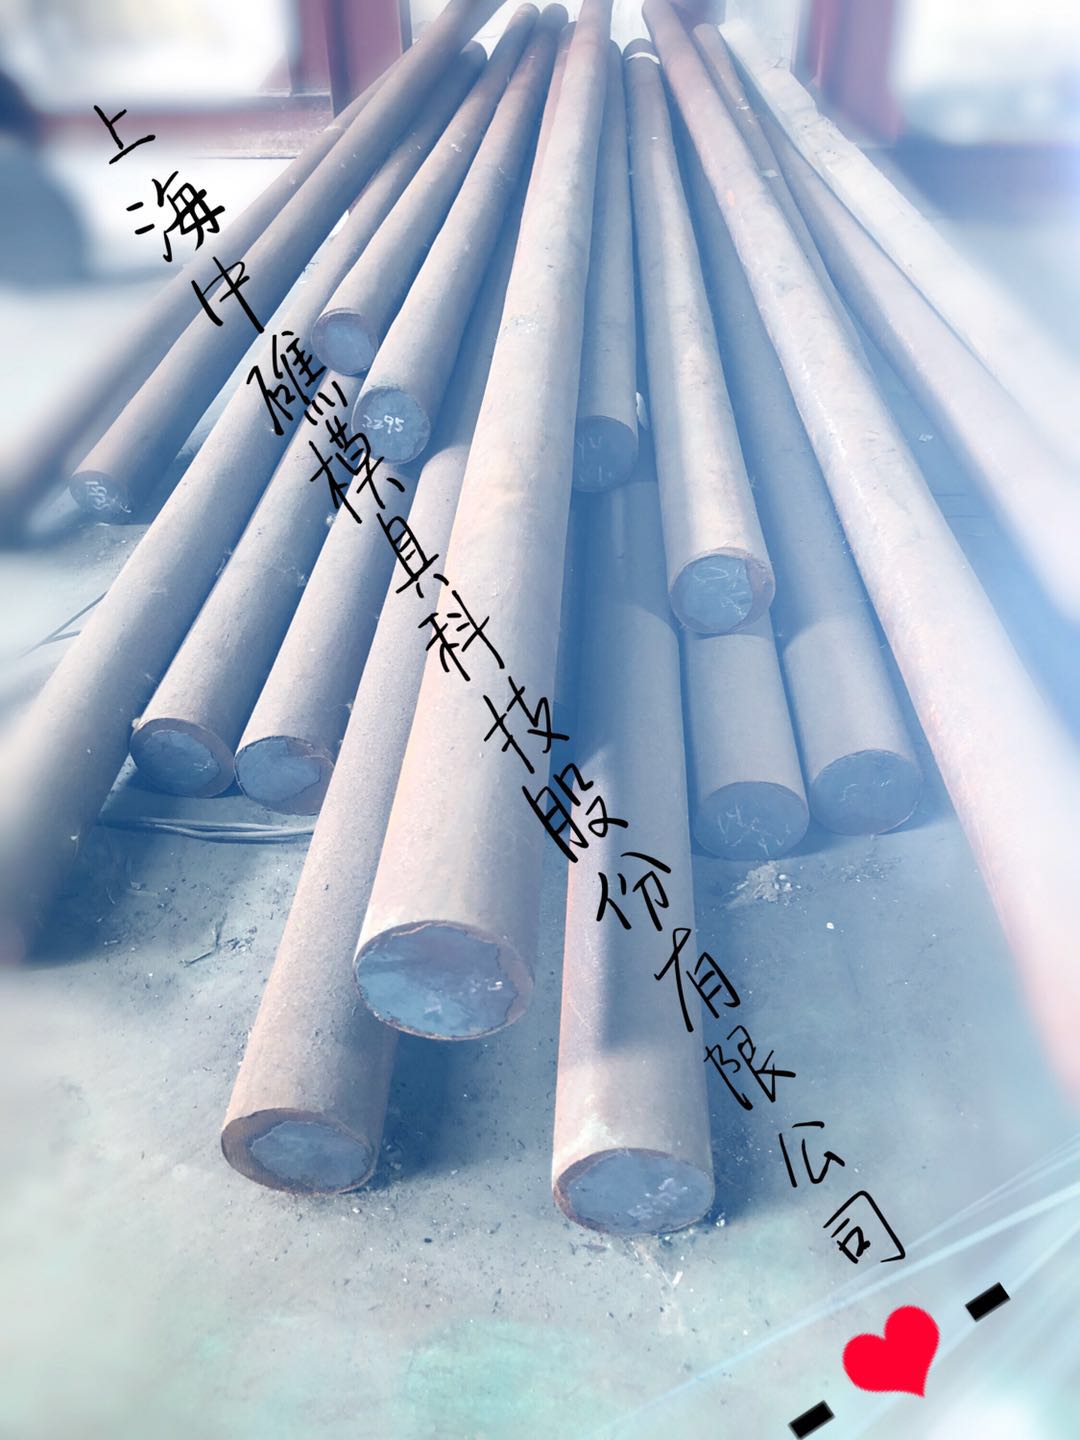 供应热芯棒材料Y4钢|热芯棒材料Y4钢|热芯棒材料Y4钢价格图片